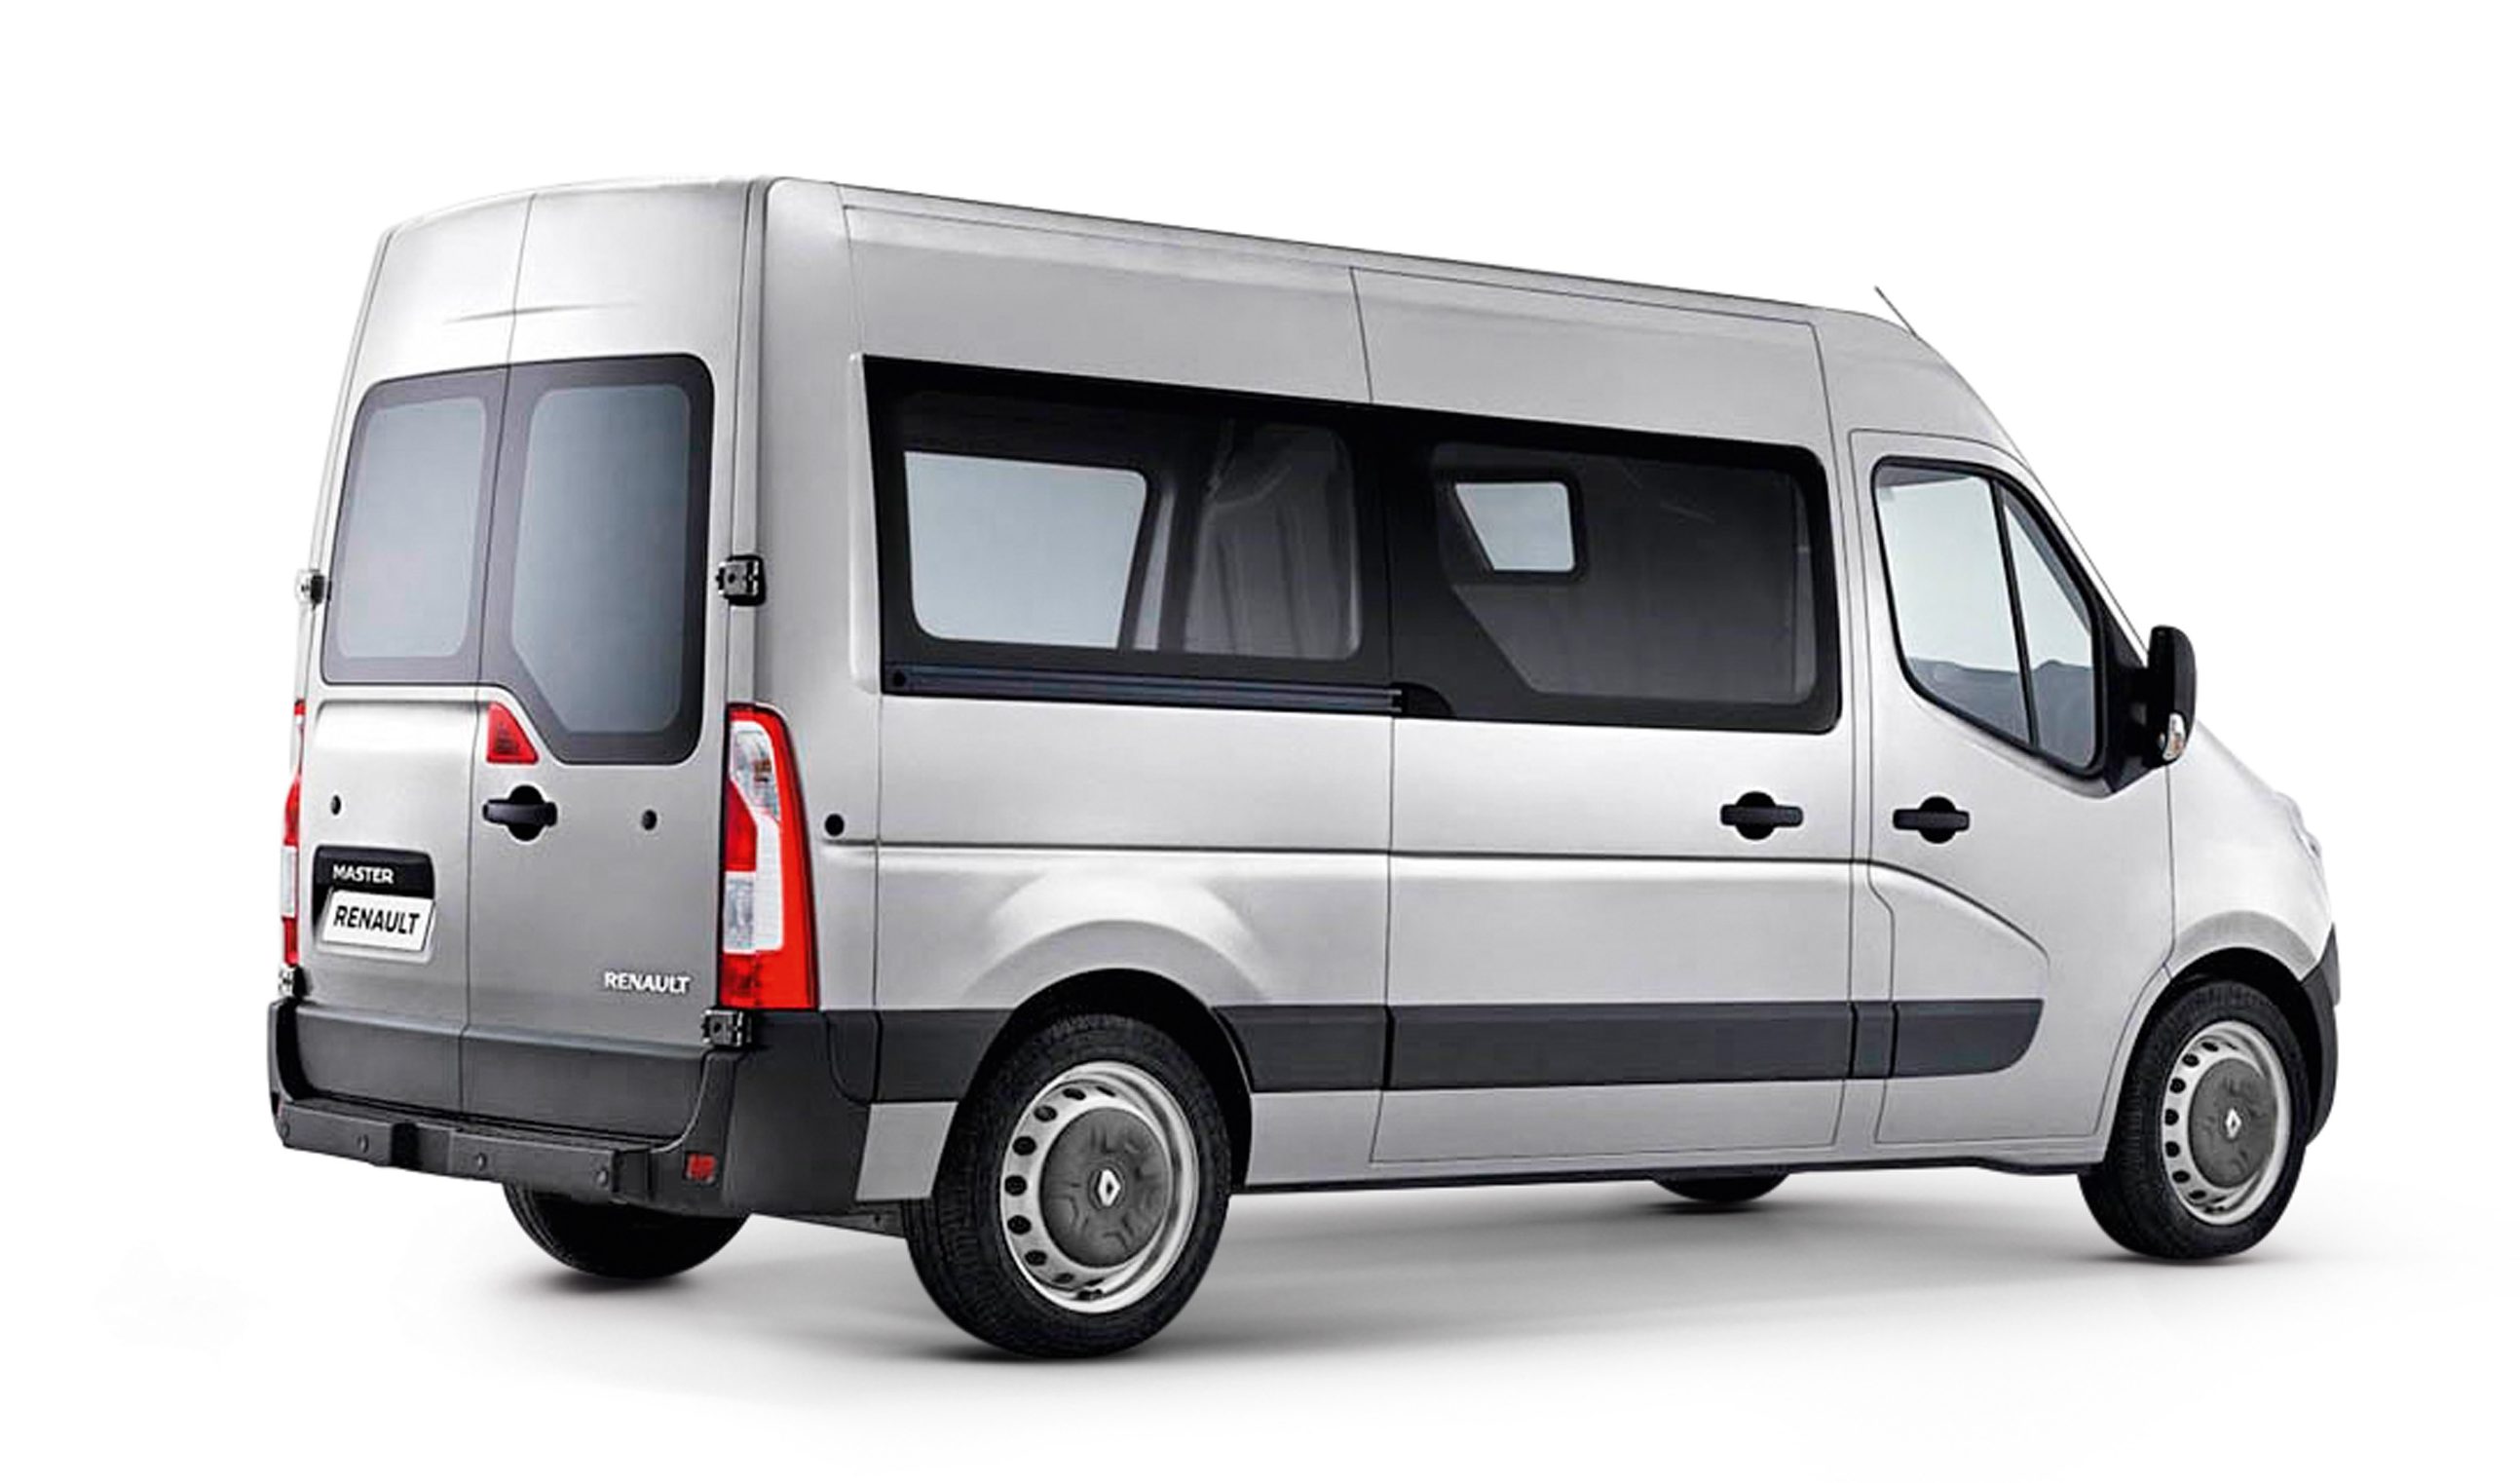 Melhores vans e utilitários de pequeno porte: confira nossa seleção - Divelp